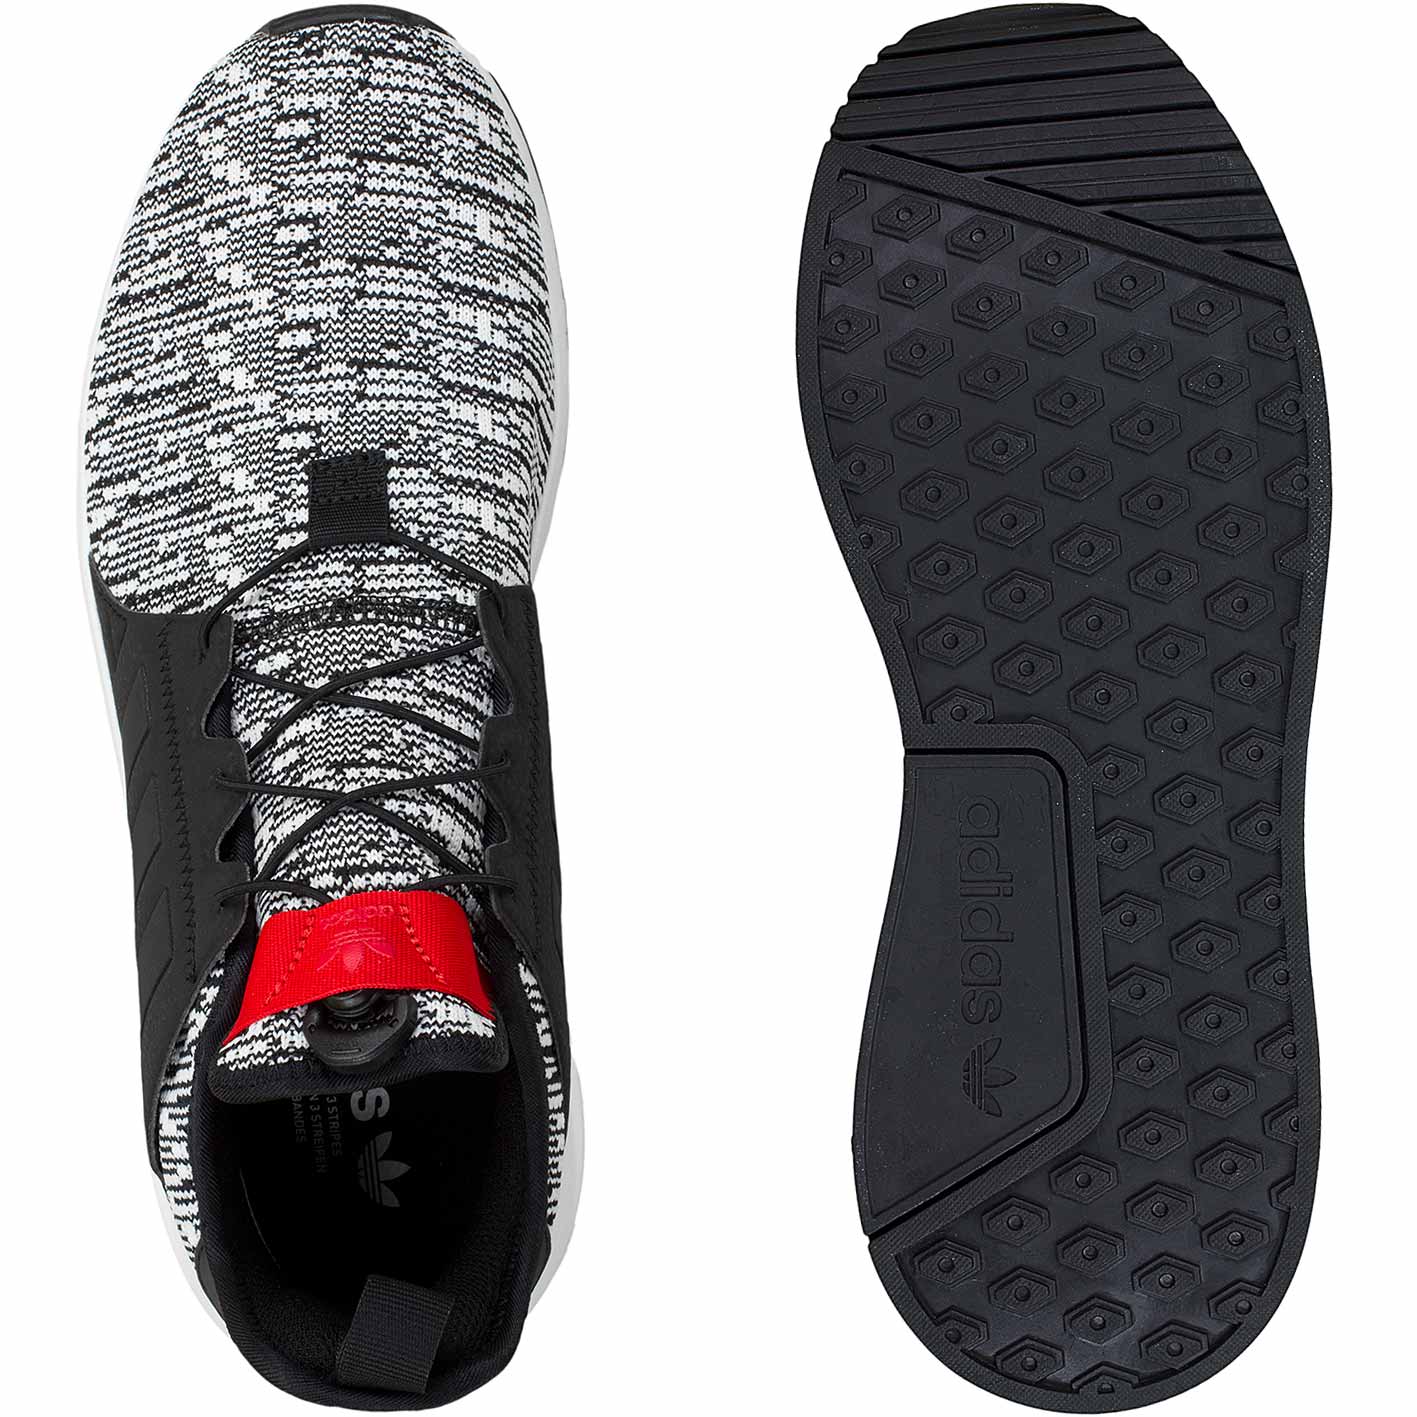 ☆ Adidas Originals Sneaker X PLR schwarz/schwarz/rot - hier bestellen!